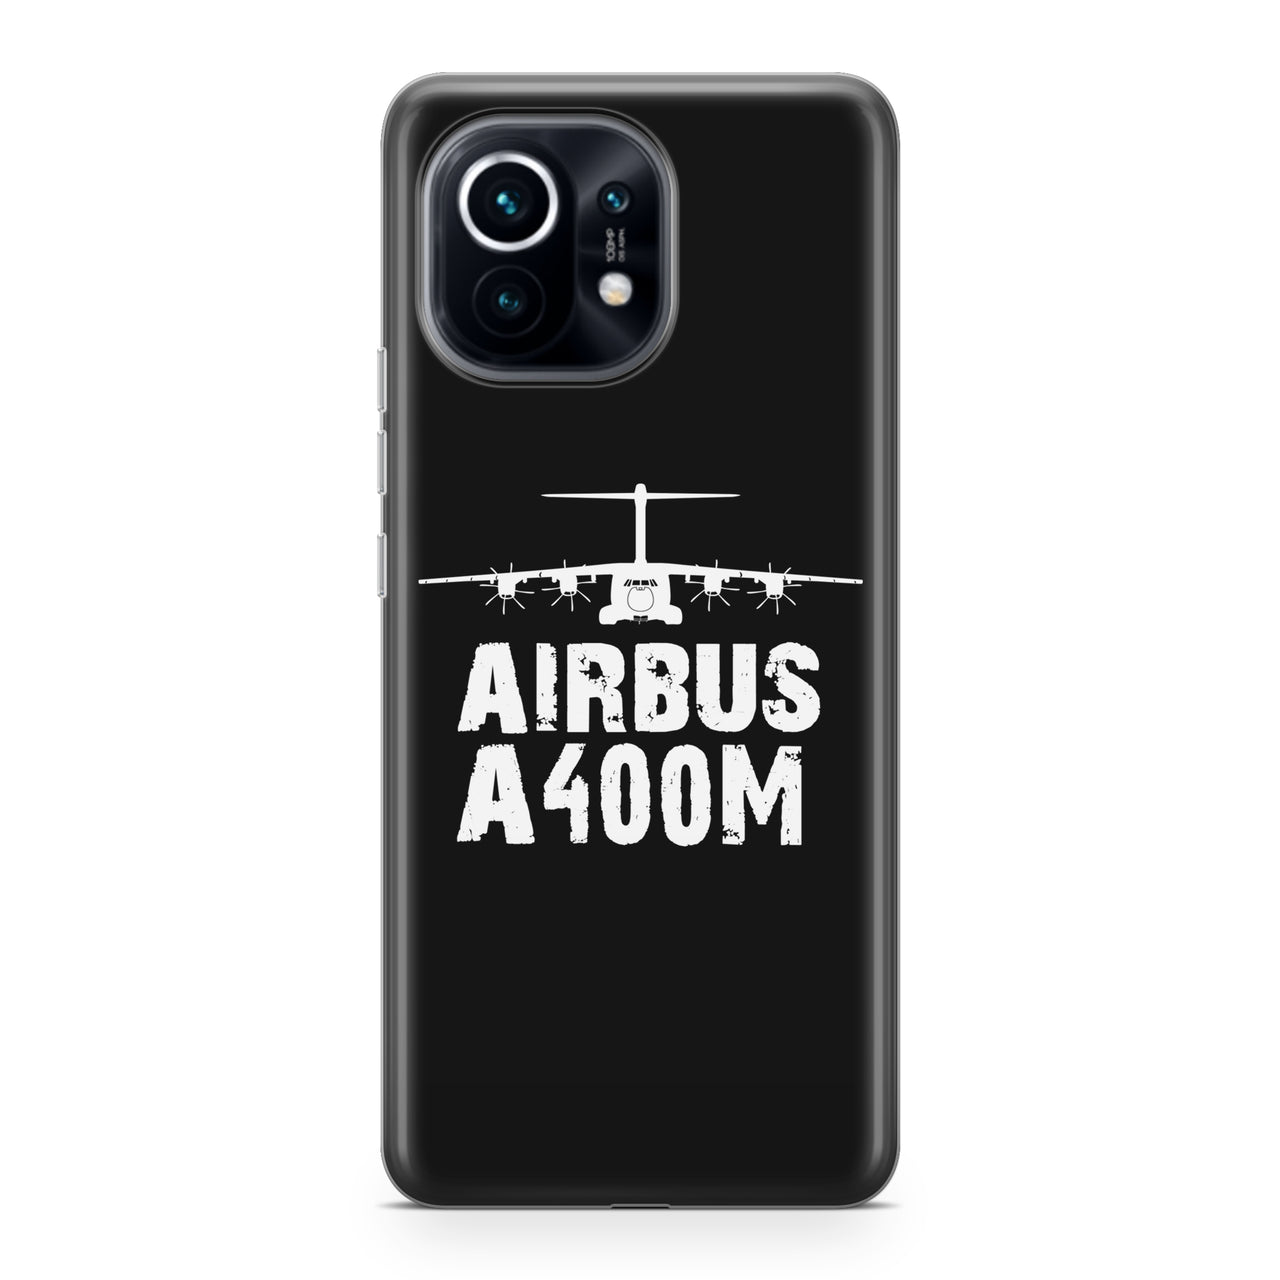 Airbus A400M & Plane Designed Xiaomi Cases